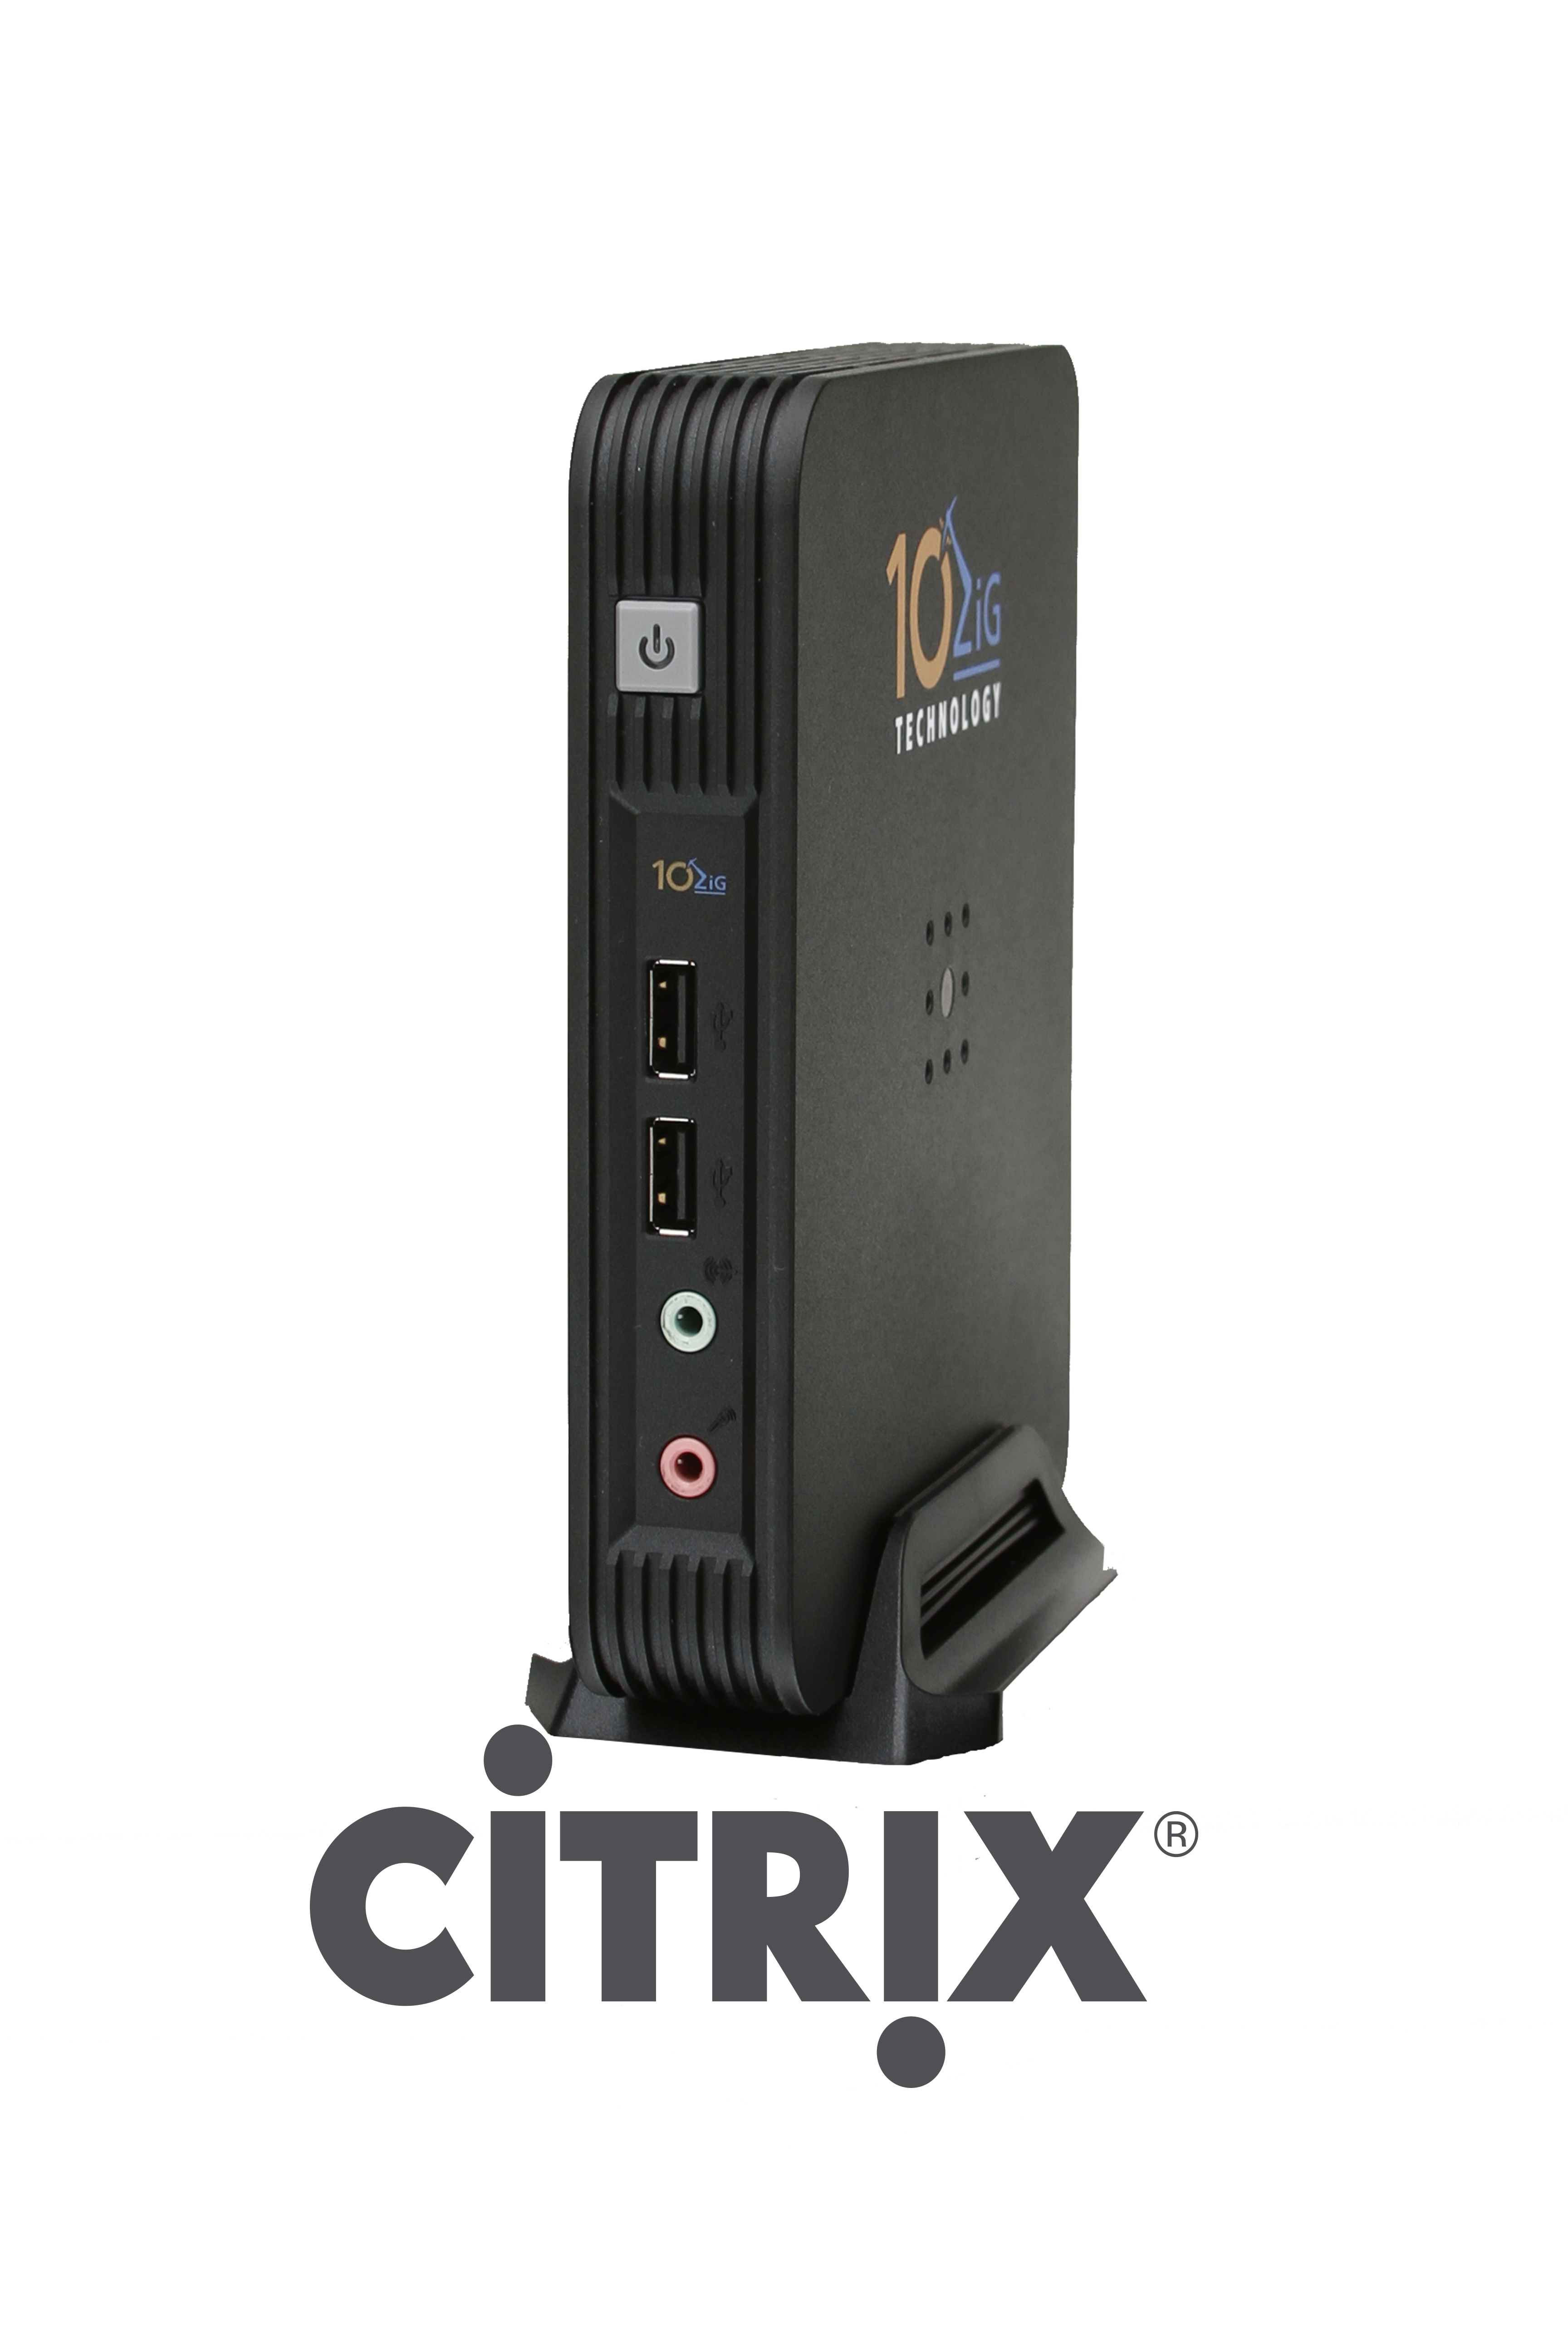 citrix receiver versions